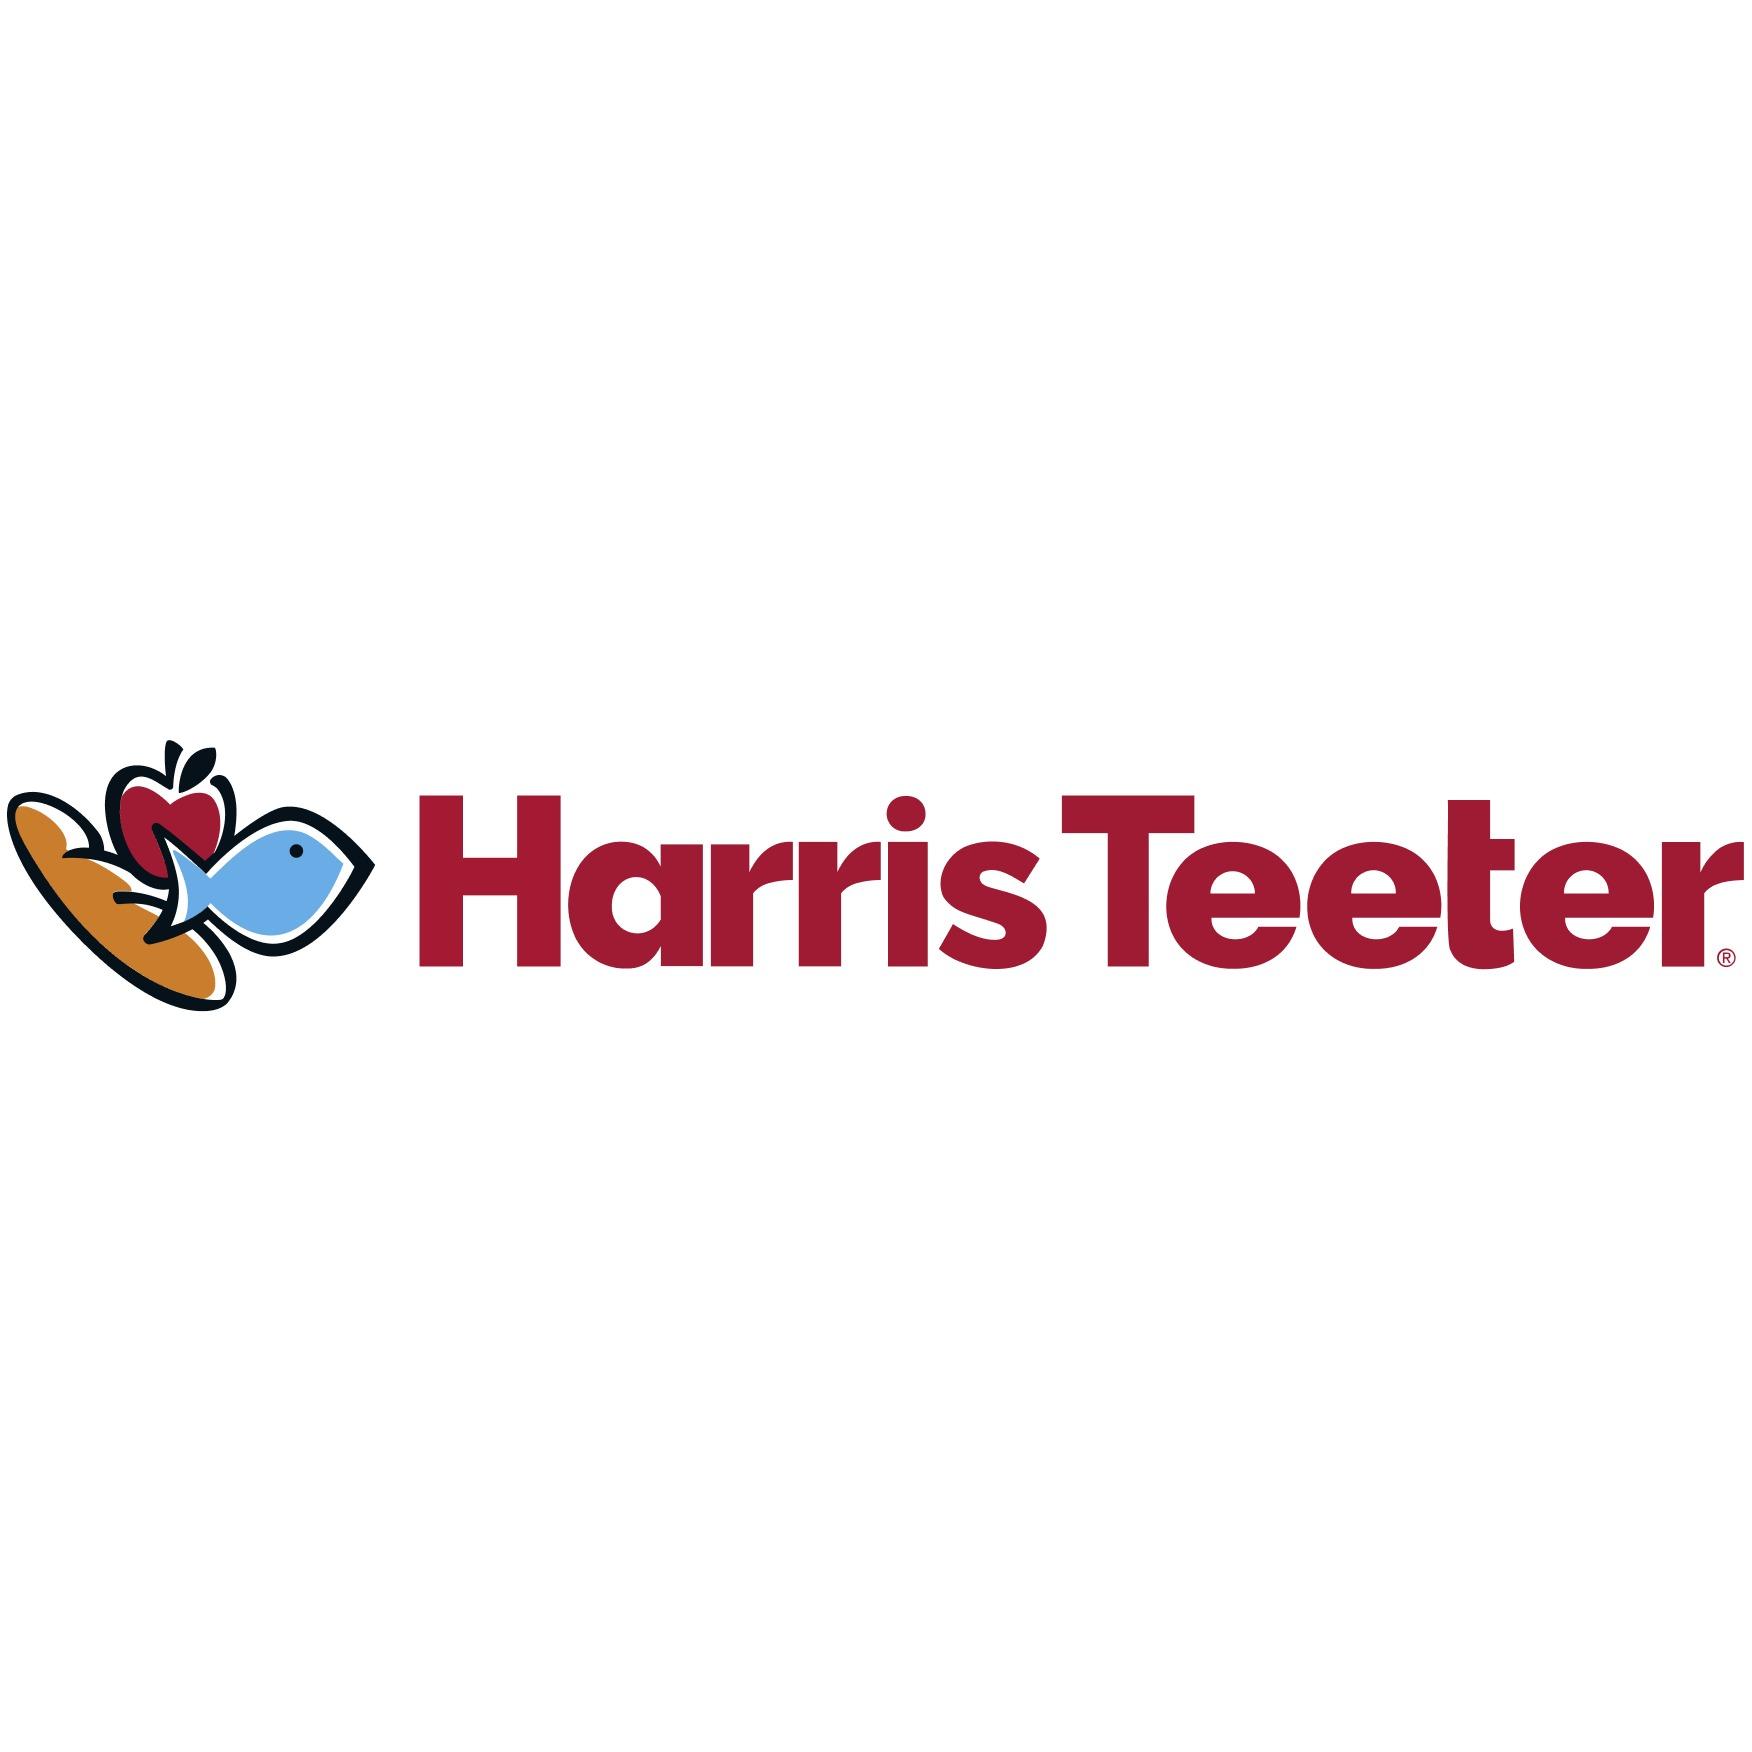 Harris Teeter - Arlington, VA 22203 - (571)758-2640 | ShowMeLocal.com